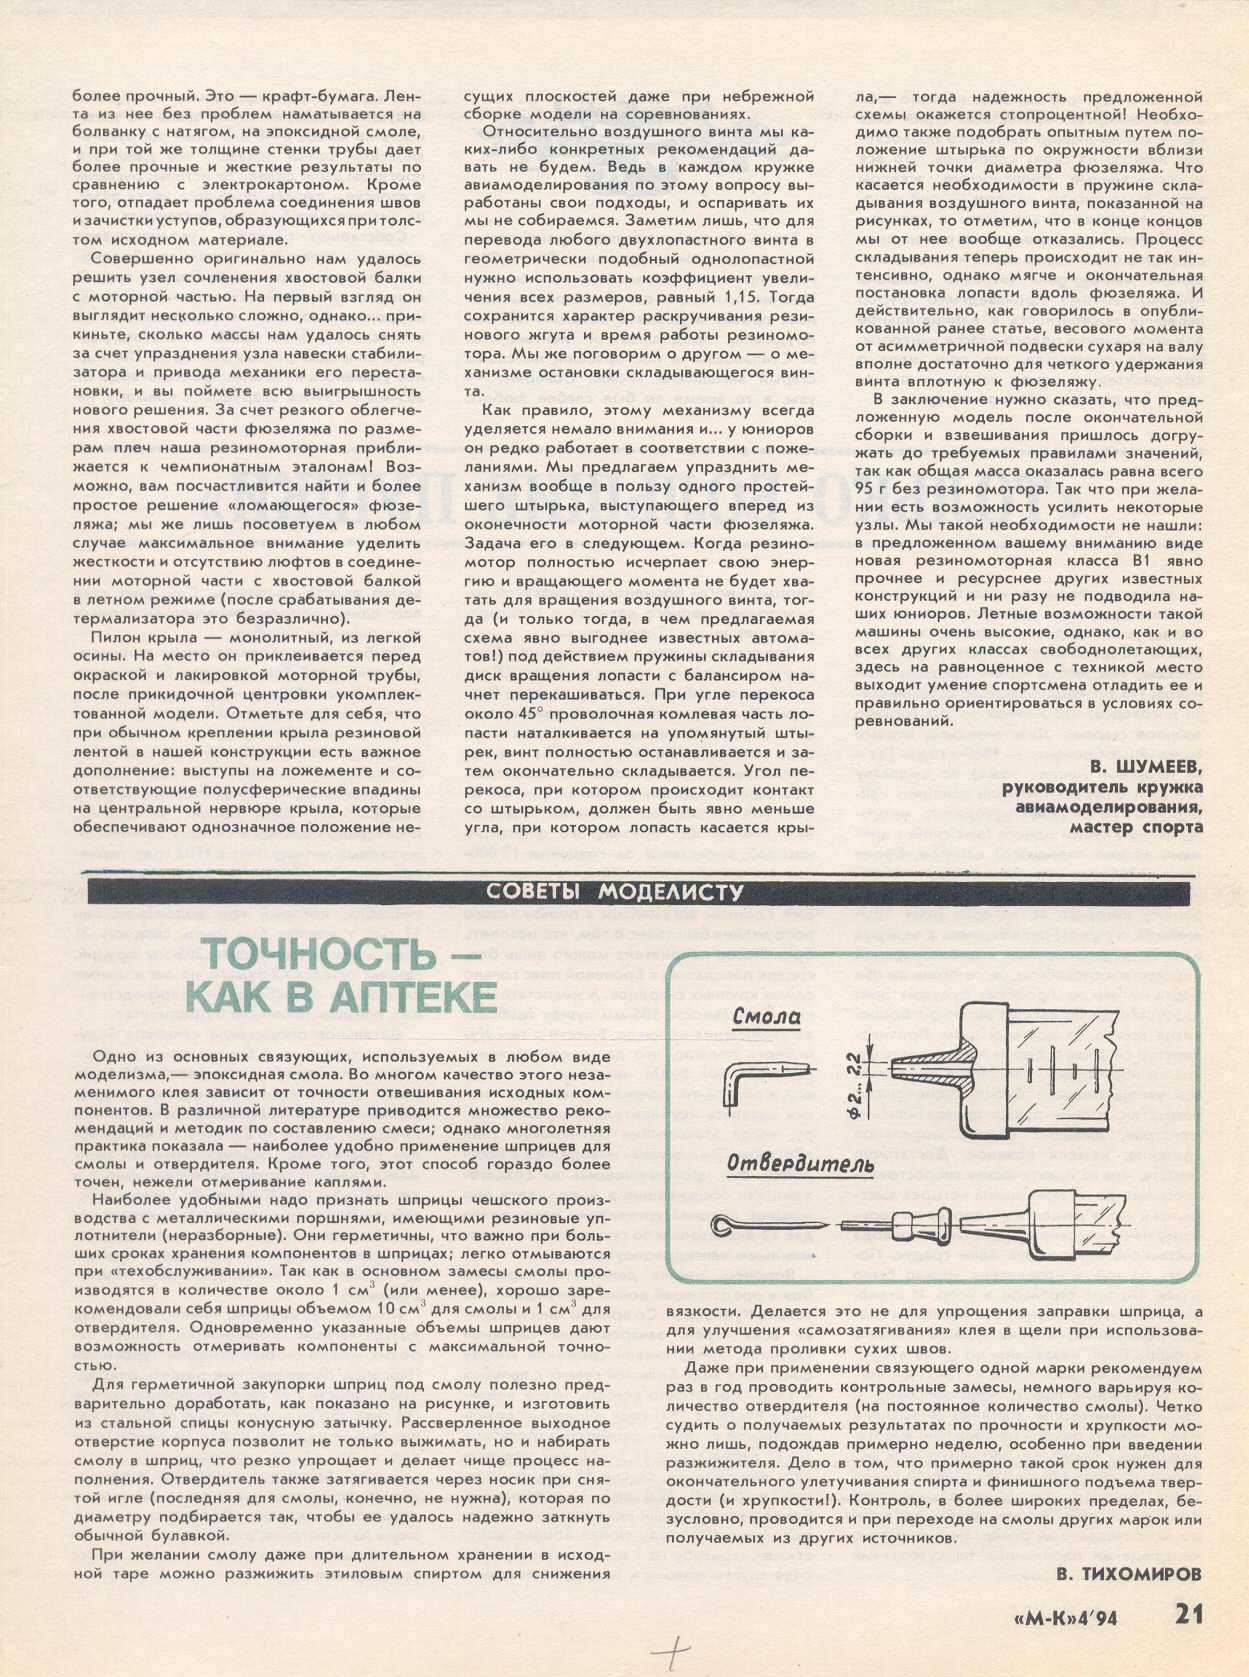 МК 4, 1994, 21 c.